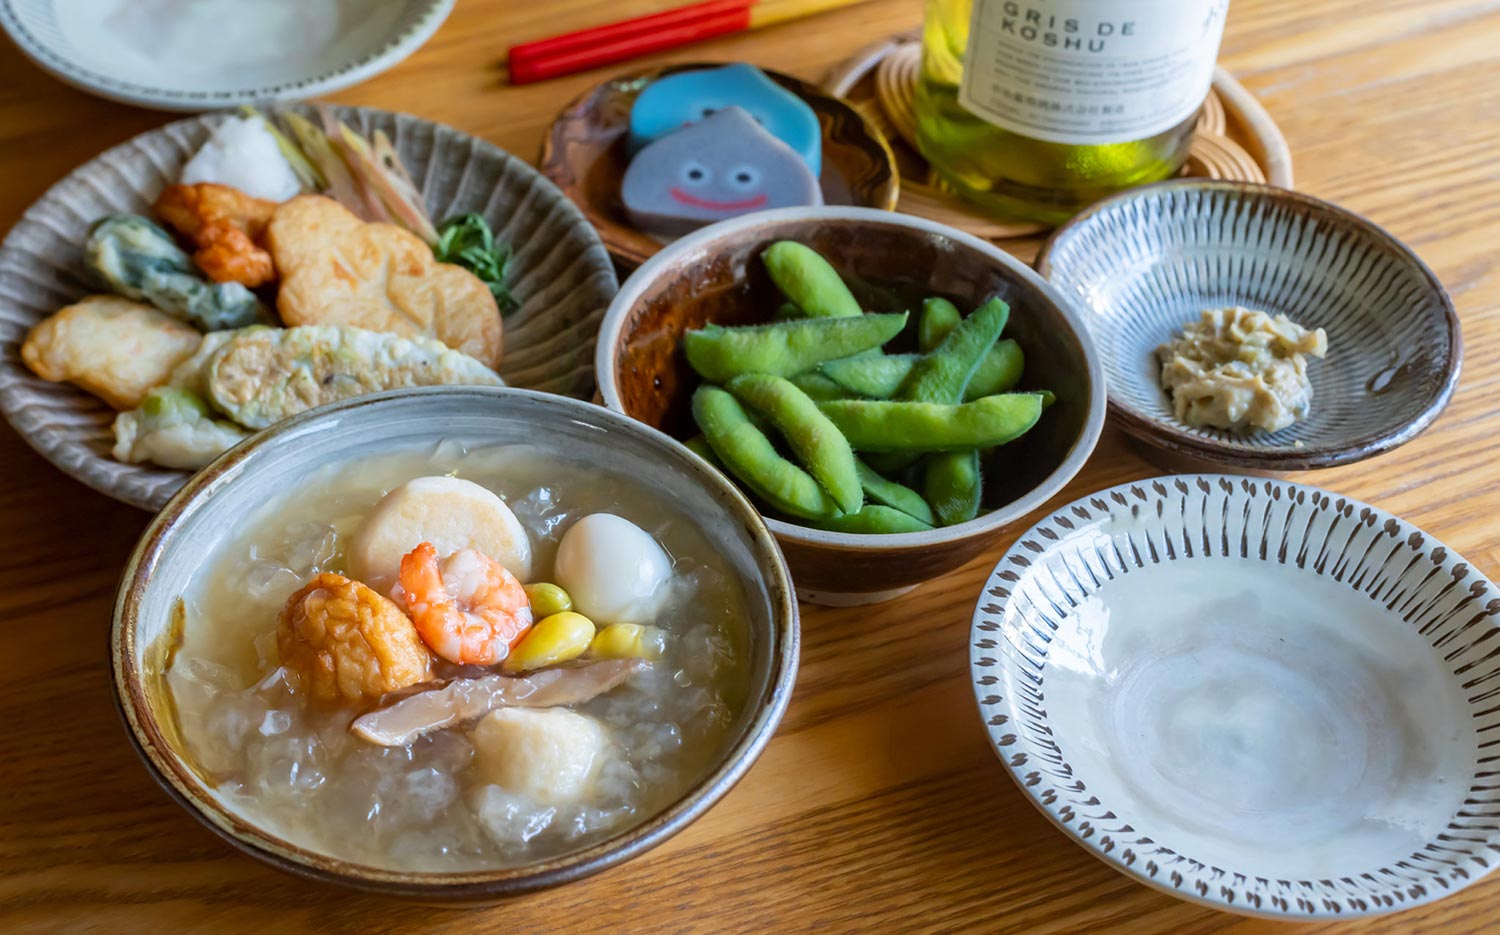 【東京おでんだね】鈴廣に学ぶ夏のおでんと蒲鉾の楽しみ方